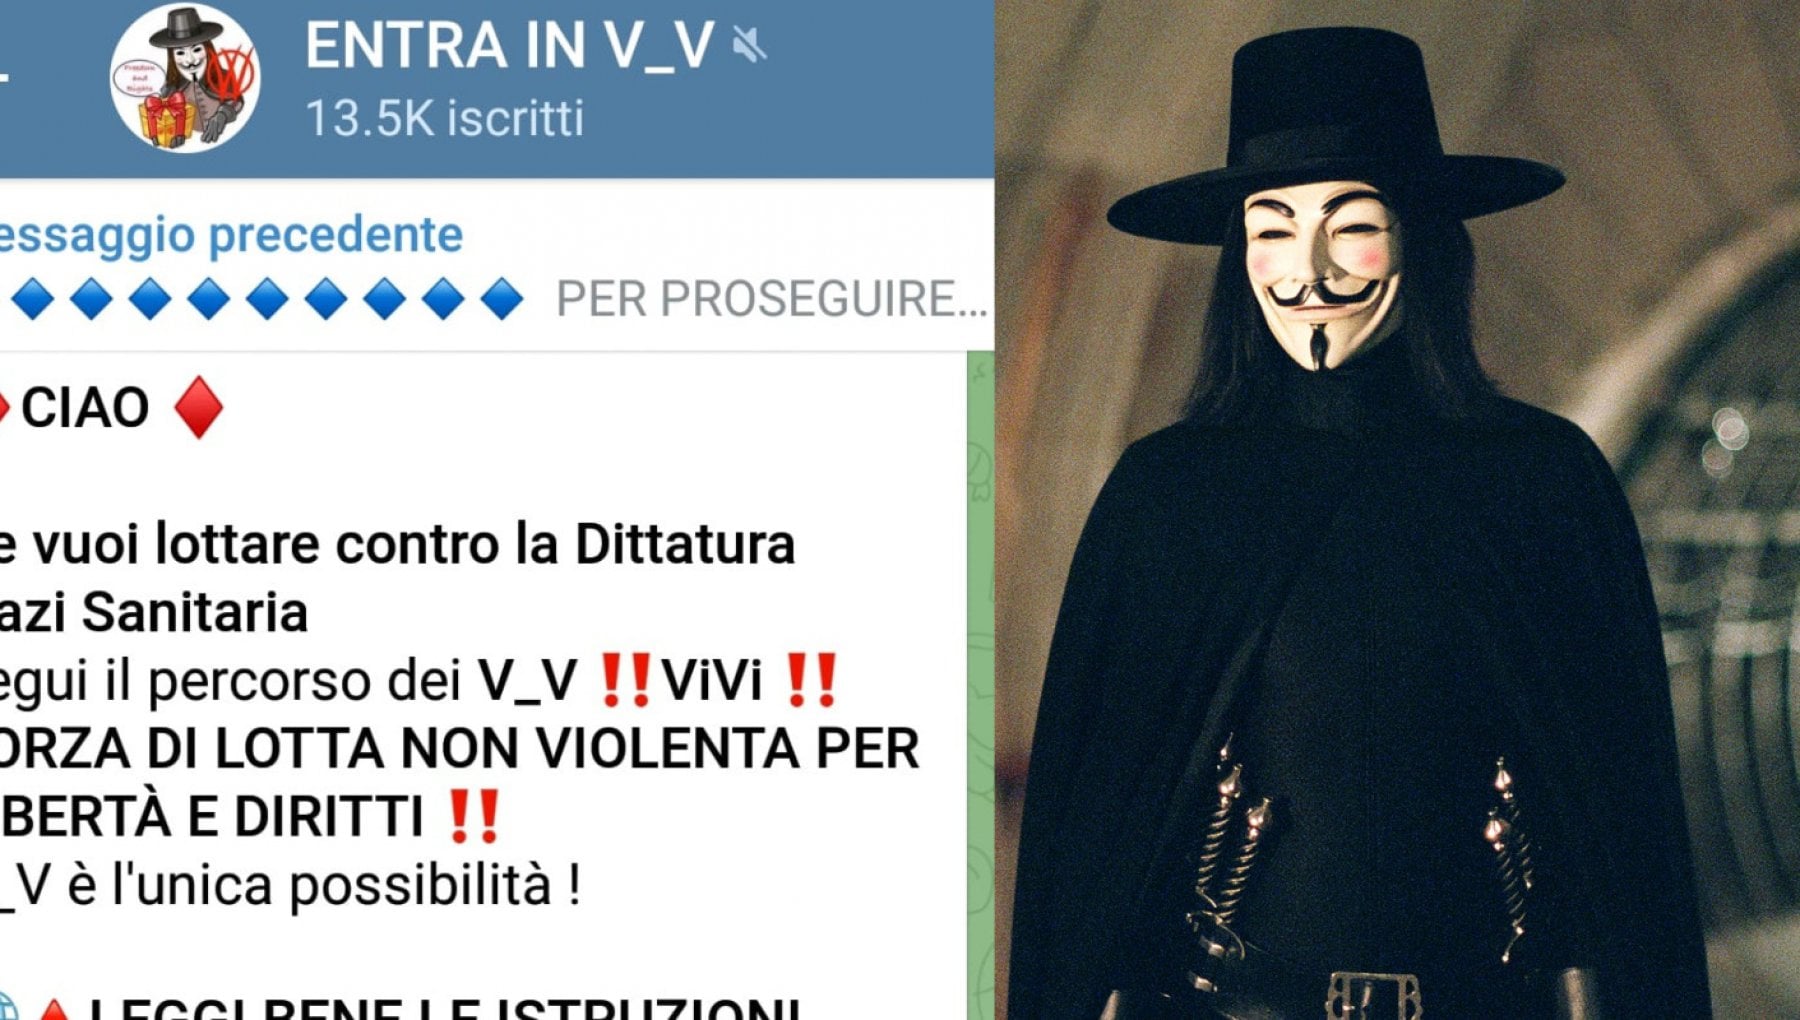 Denunciati i due promotori del gruppo no-vax ‘guerrieri ViVi’: perquisizioni in tutta Italia